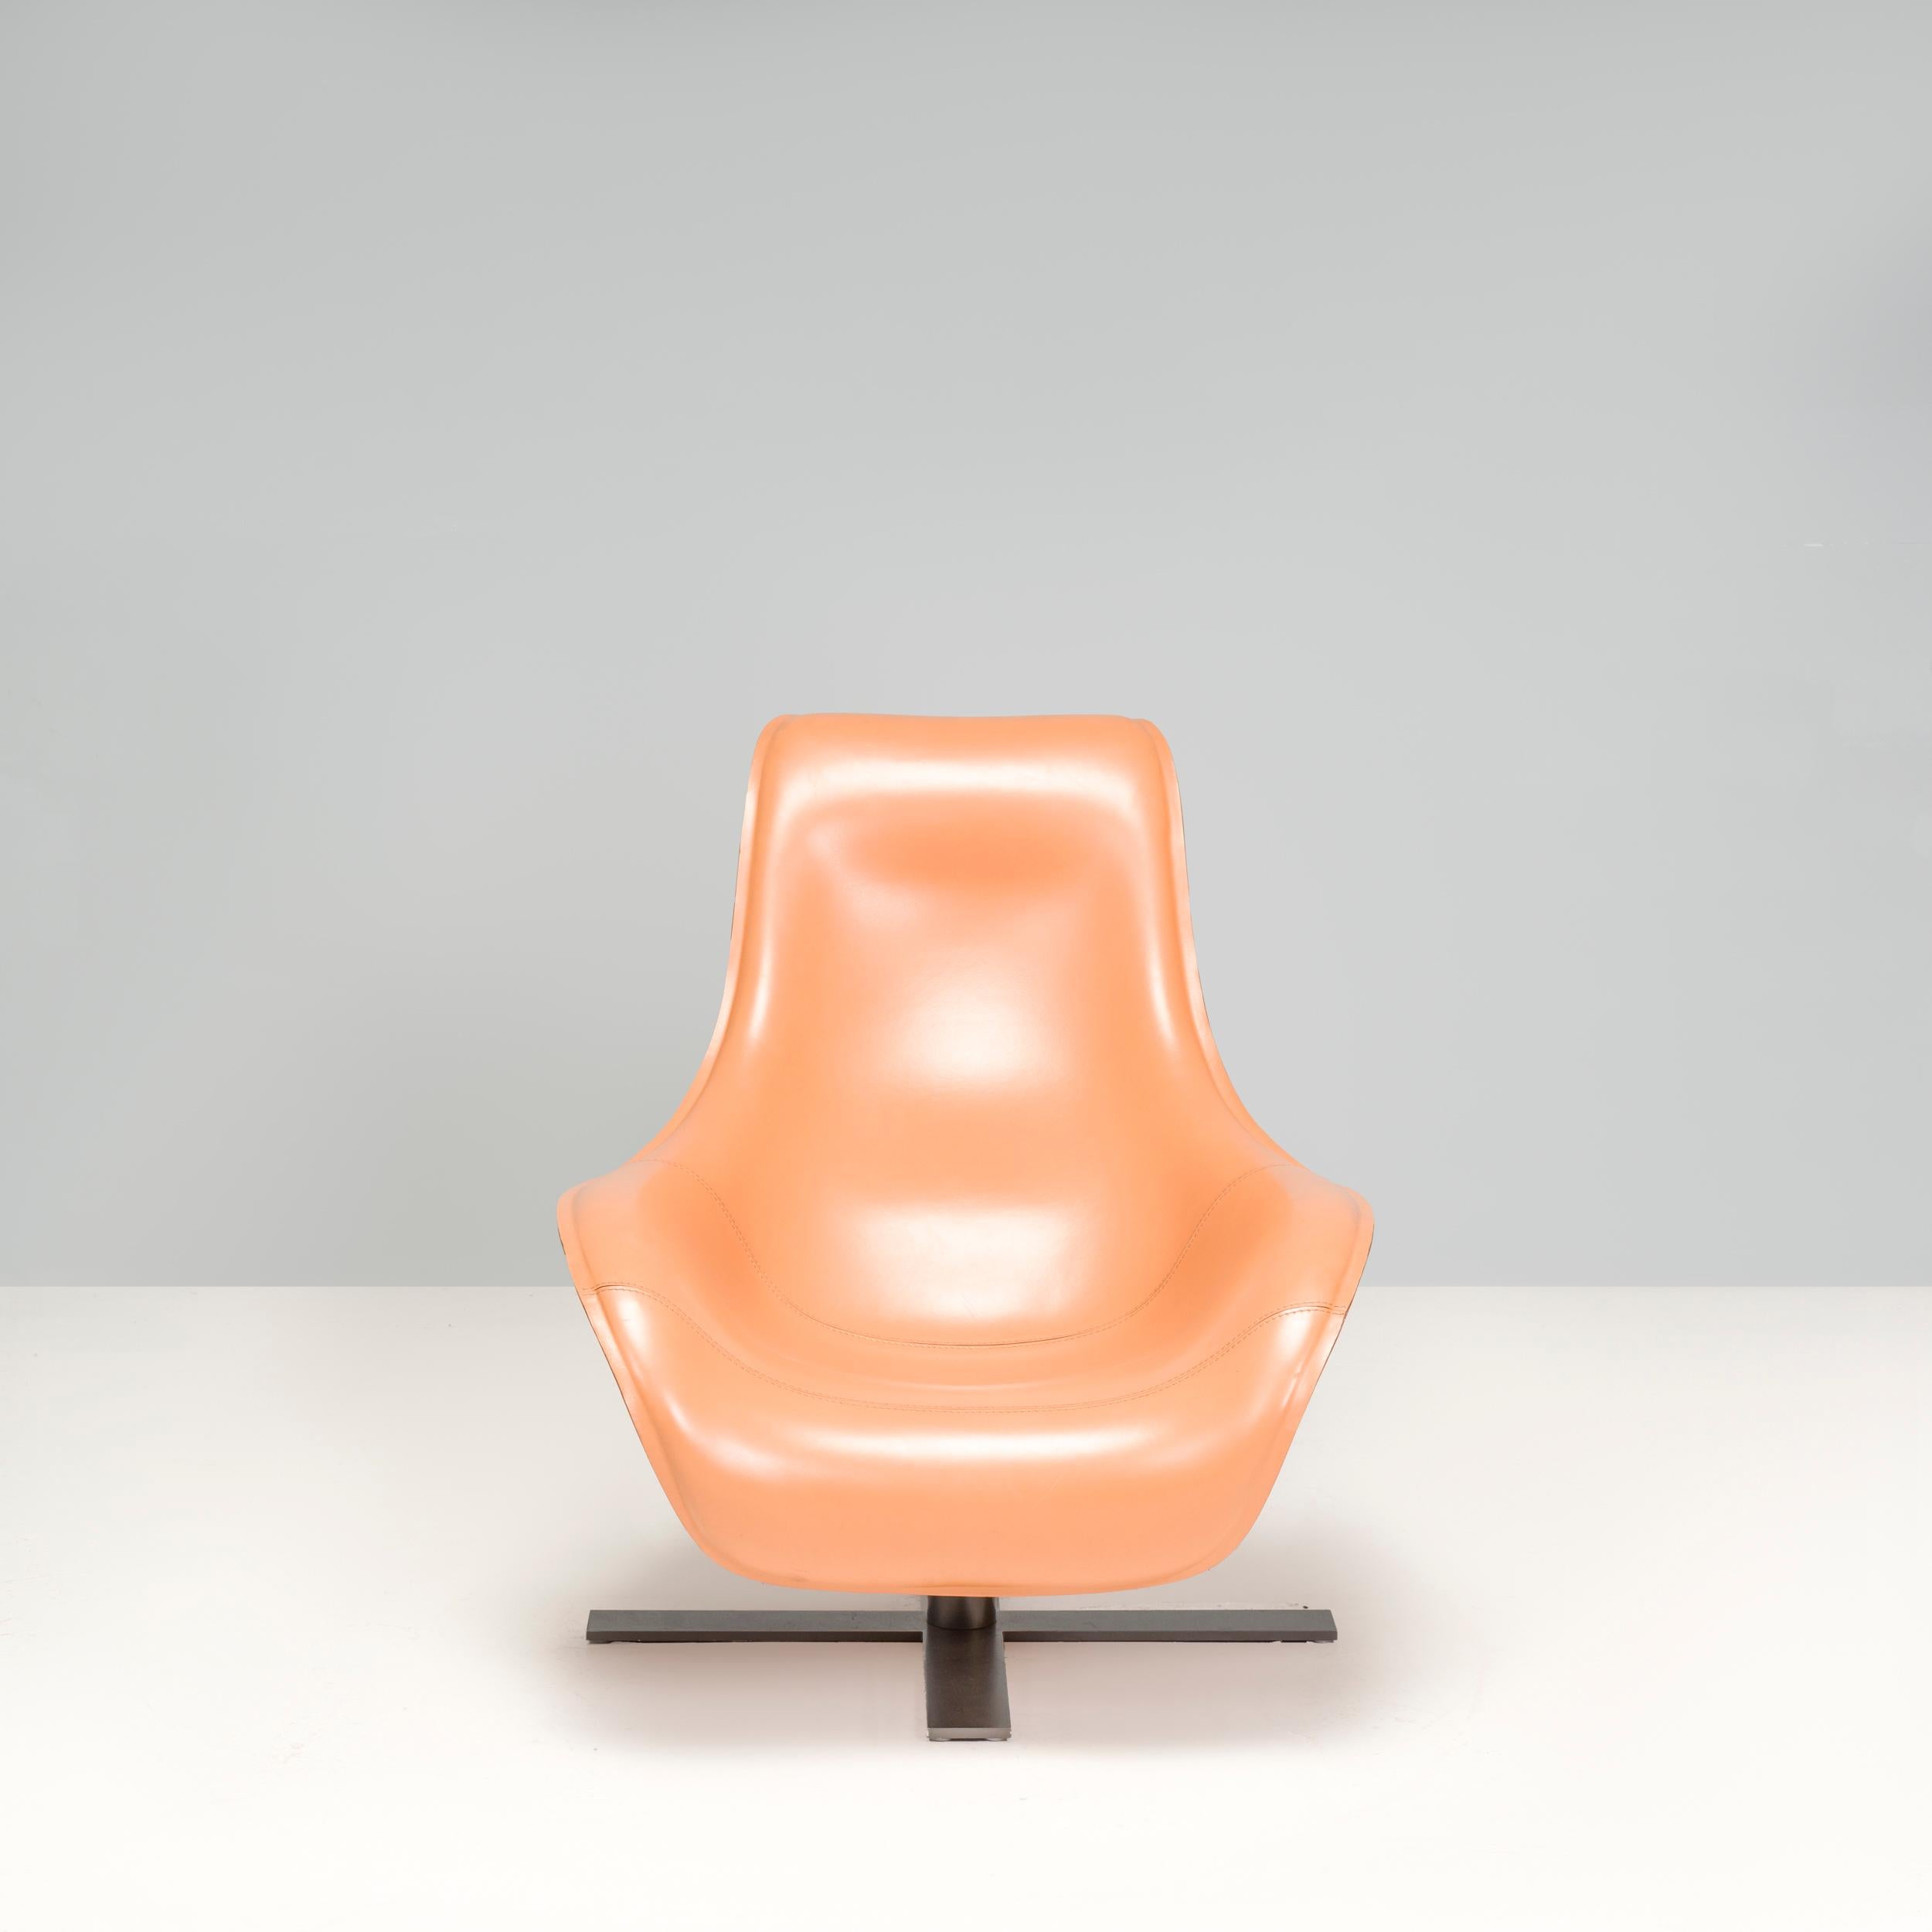 Der 2003 von Antonio Citterio für B&B Italia entworfene Mart-Loungesessel ist ein fantastisches Beispiel für modernes Design.

Die geschwungene Silhouette entsteht durch die Verwendung von geformtem Polyurethanschaum und thermogeformtem hellbraunen